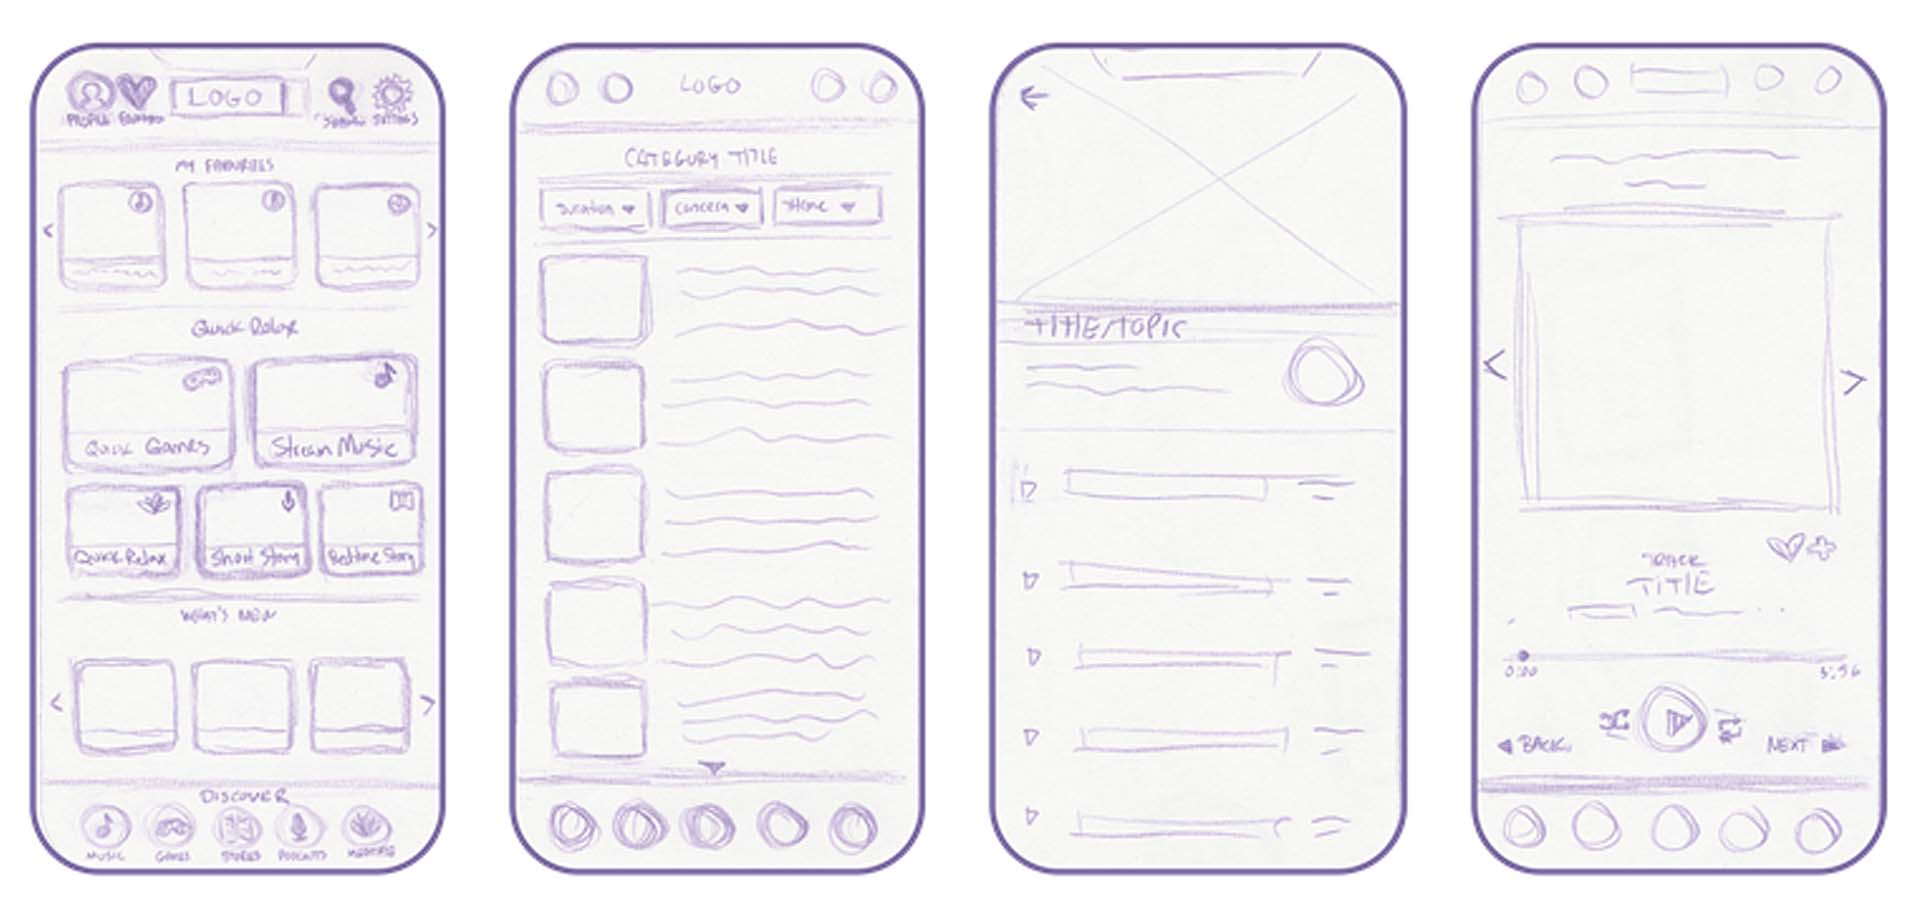 Relax App UI UX Jamie Langevin Early Sketches 01